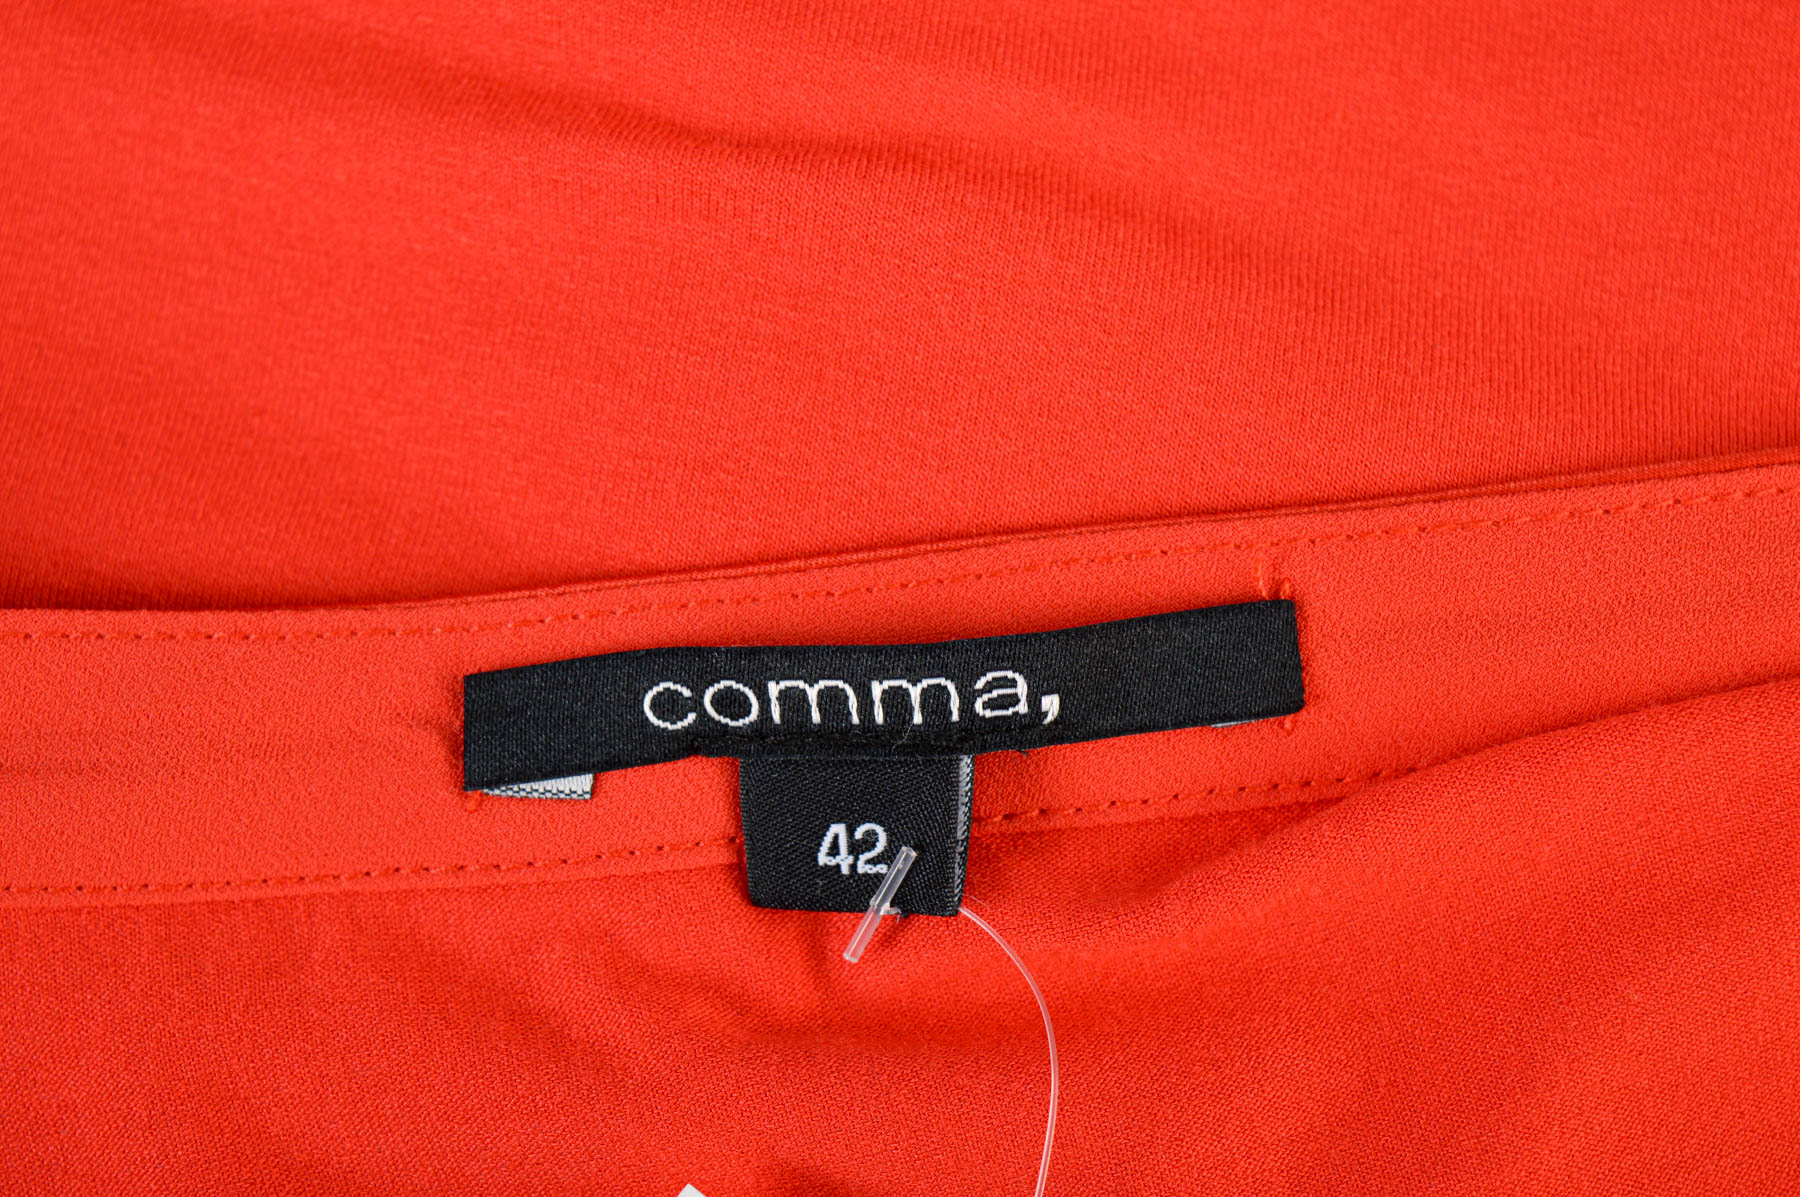 Γυναικείο μπλουζάκι - Comma, - 2